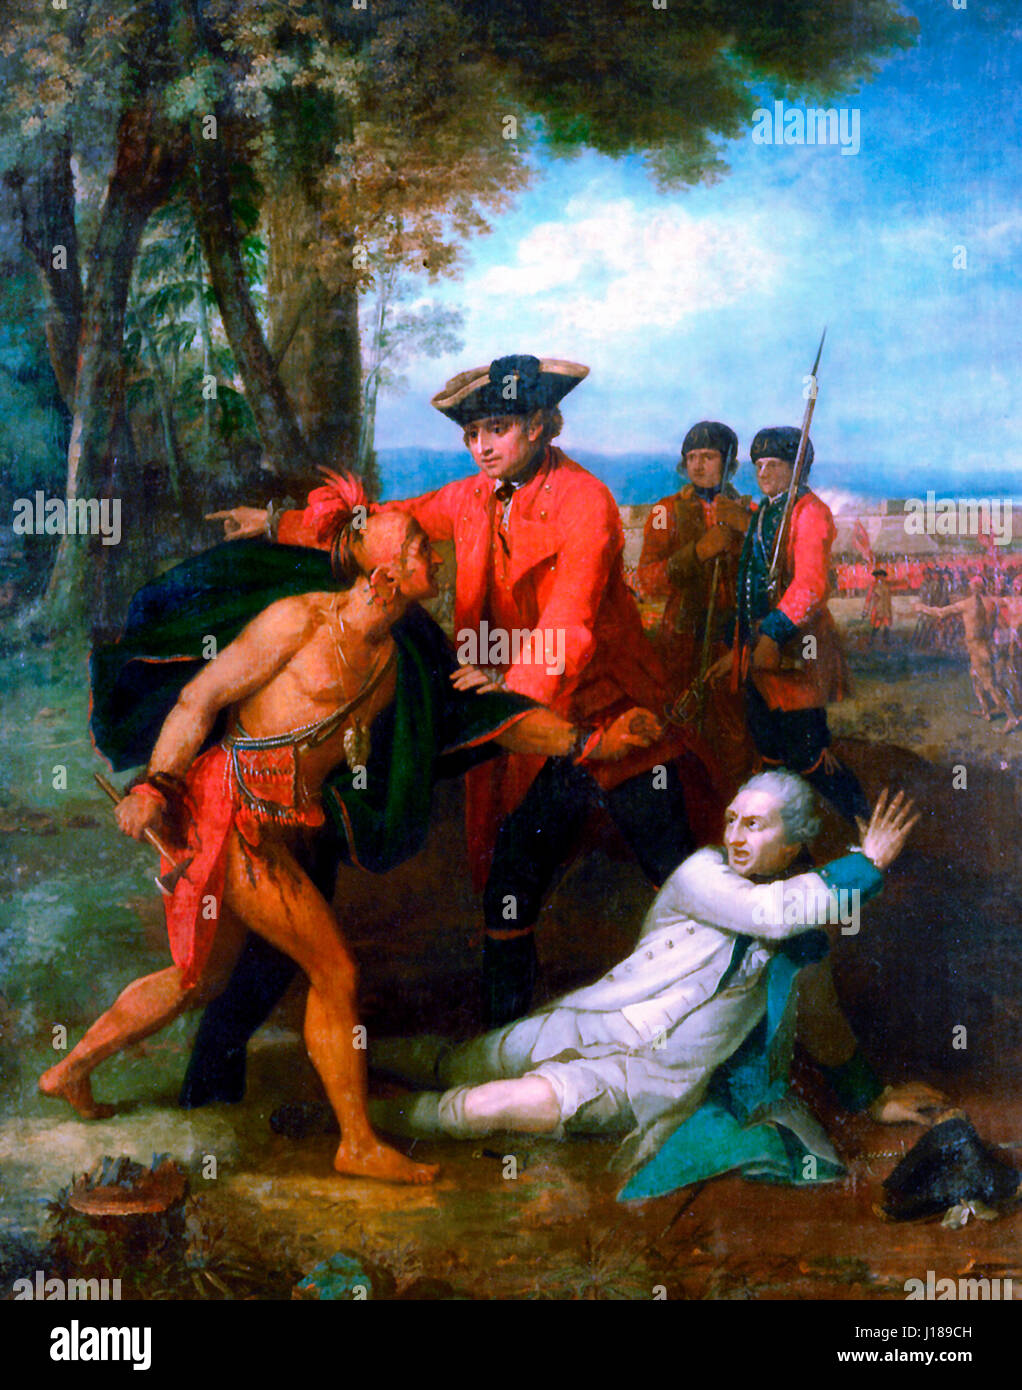 General Johnson Salvataggio di un ferito ufficiale francese dal Tomahawk di North American Indian durante la guerra di indiano e francese 1755 Foto Stock